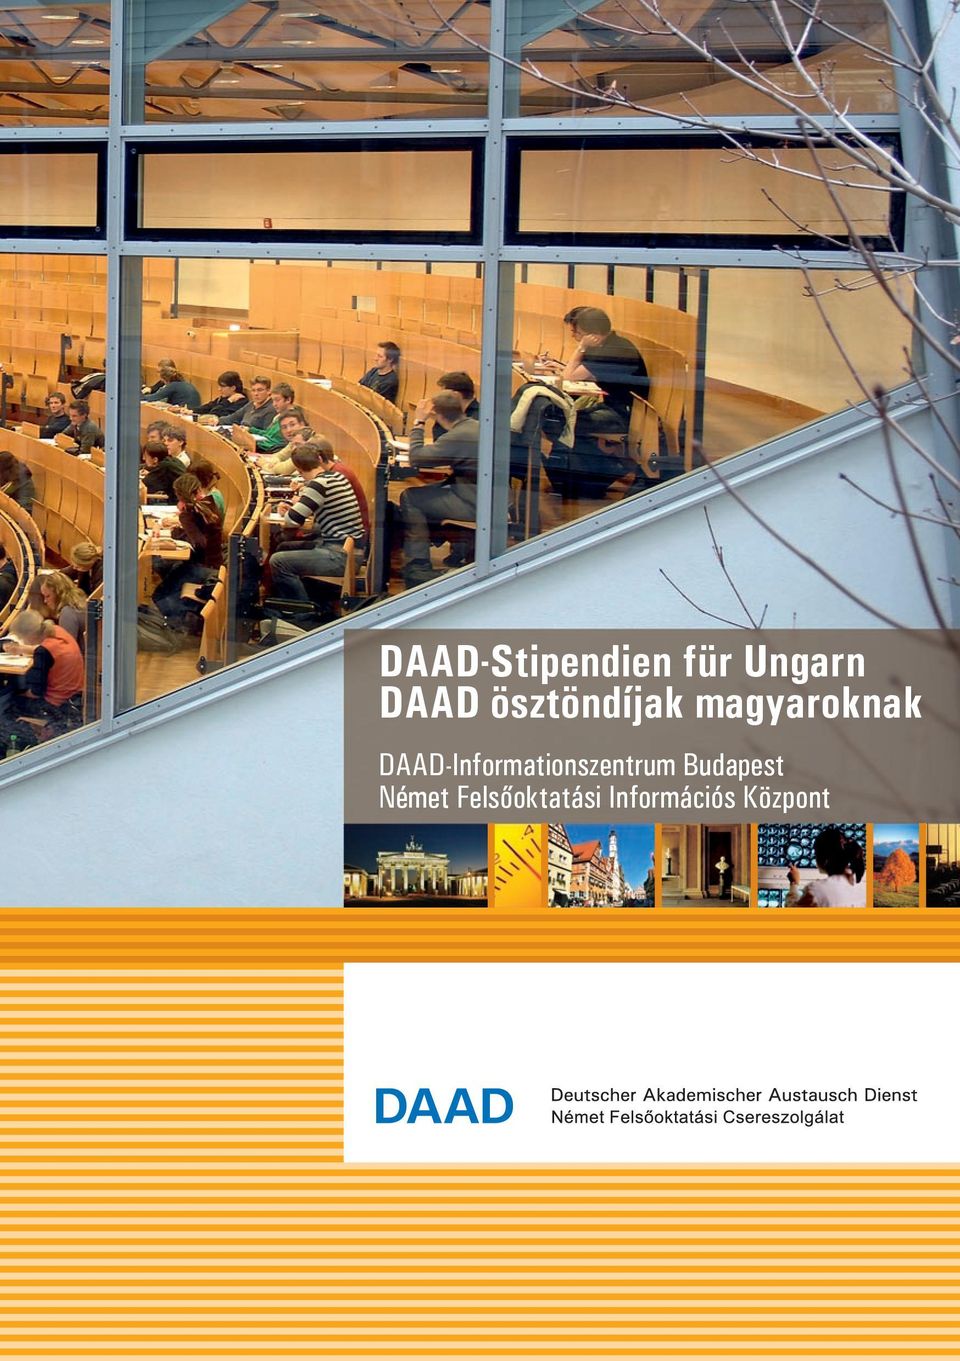 DAAD-Informationszentrum